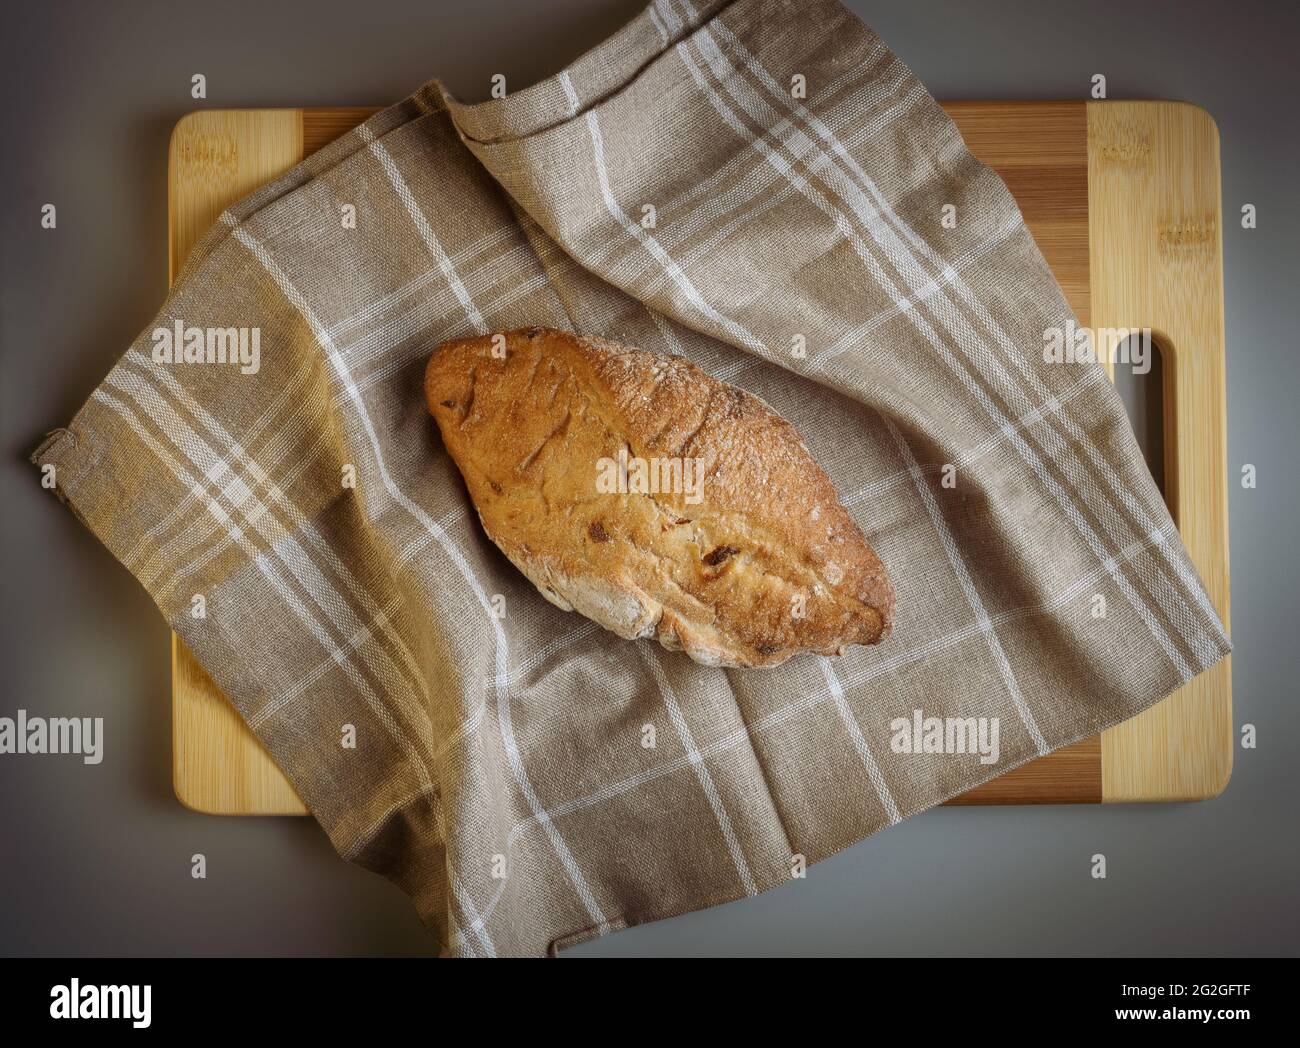 Pane di campagna caldo appena sfornato con farina, appena sfornato su un asciugamano di lino marrone con quadrati bianchi, un pannello di legno. Fotographia appetitosa. Foto Stock